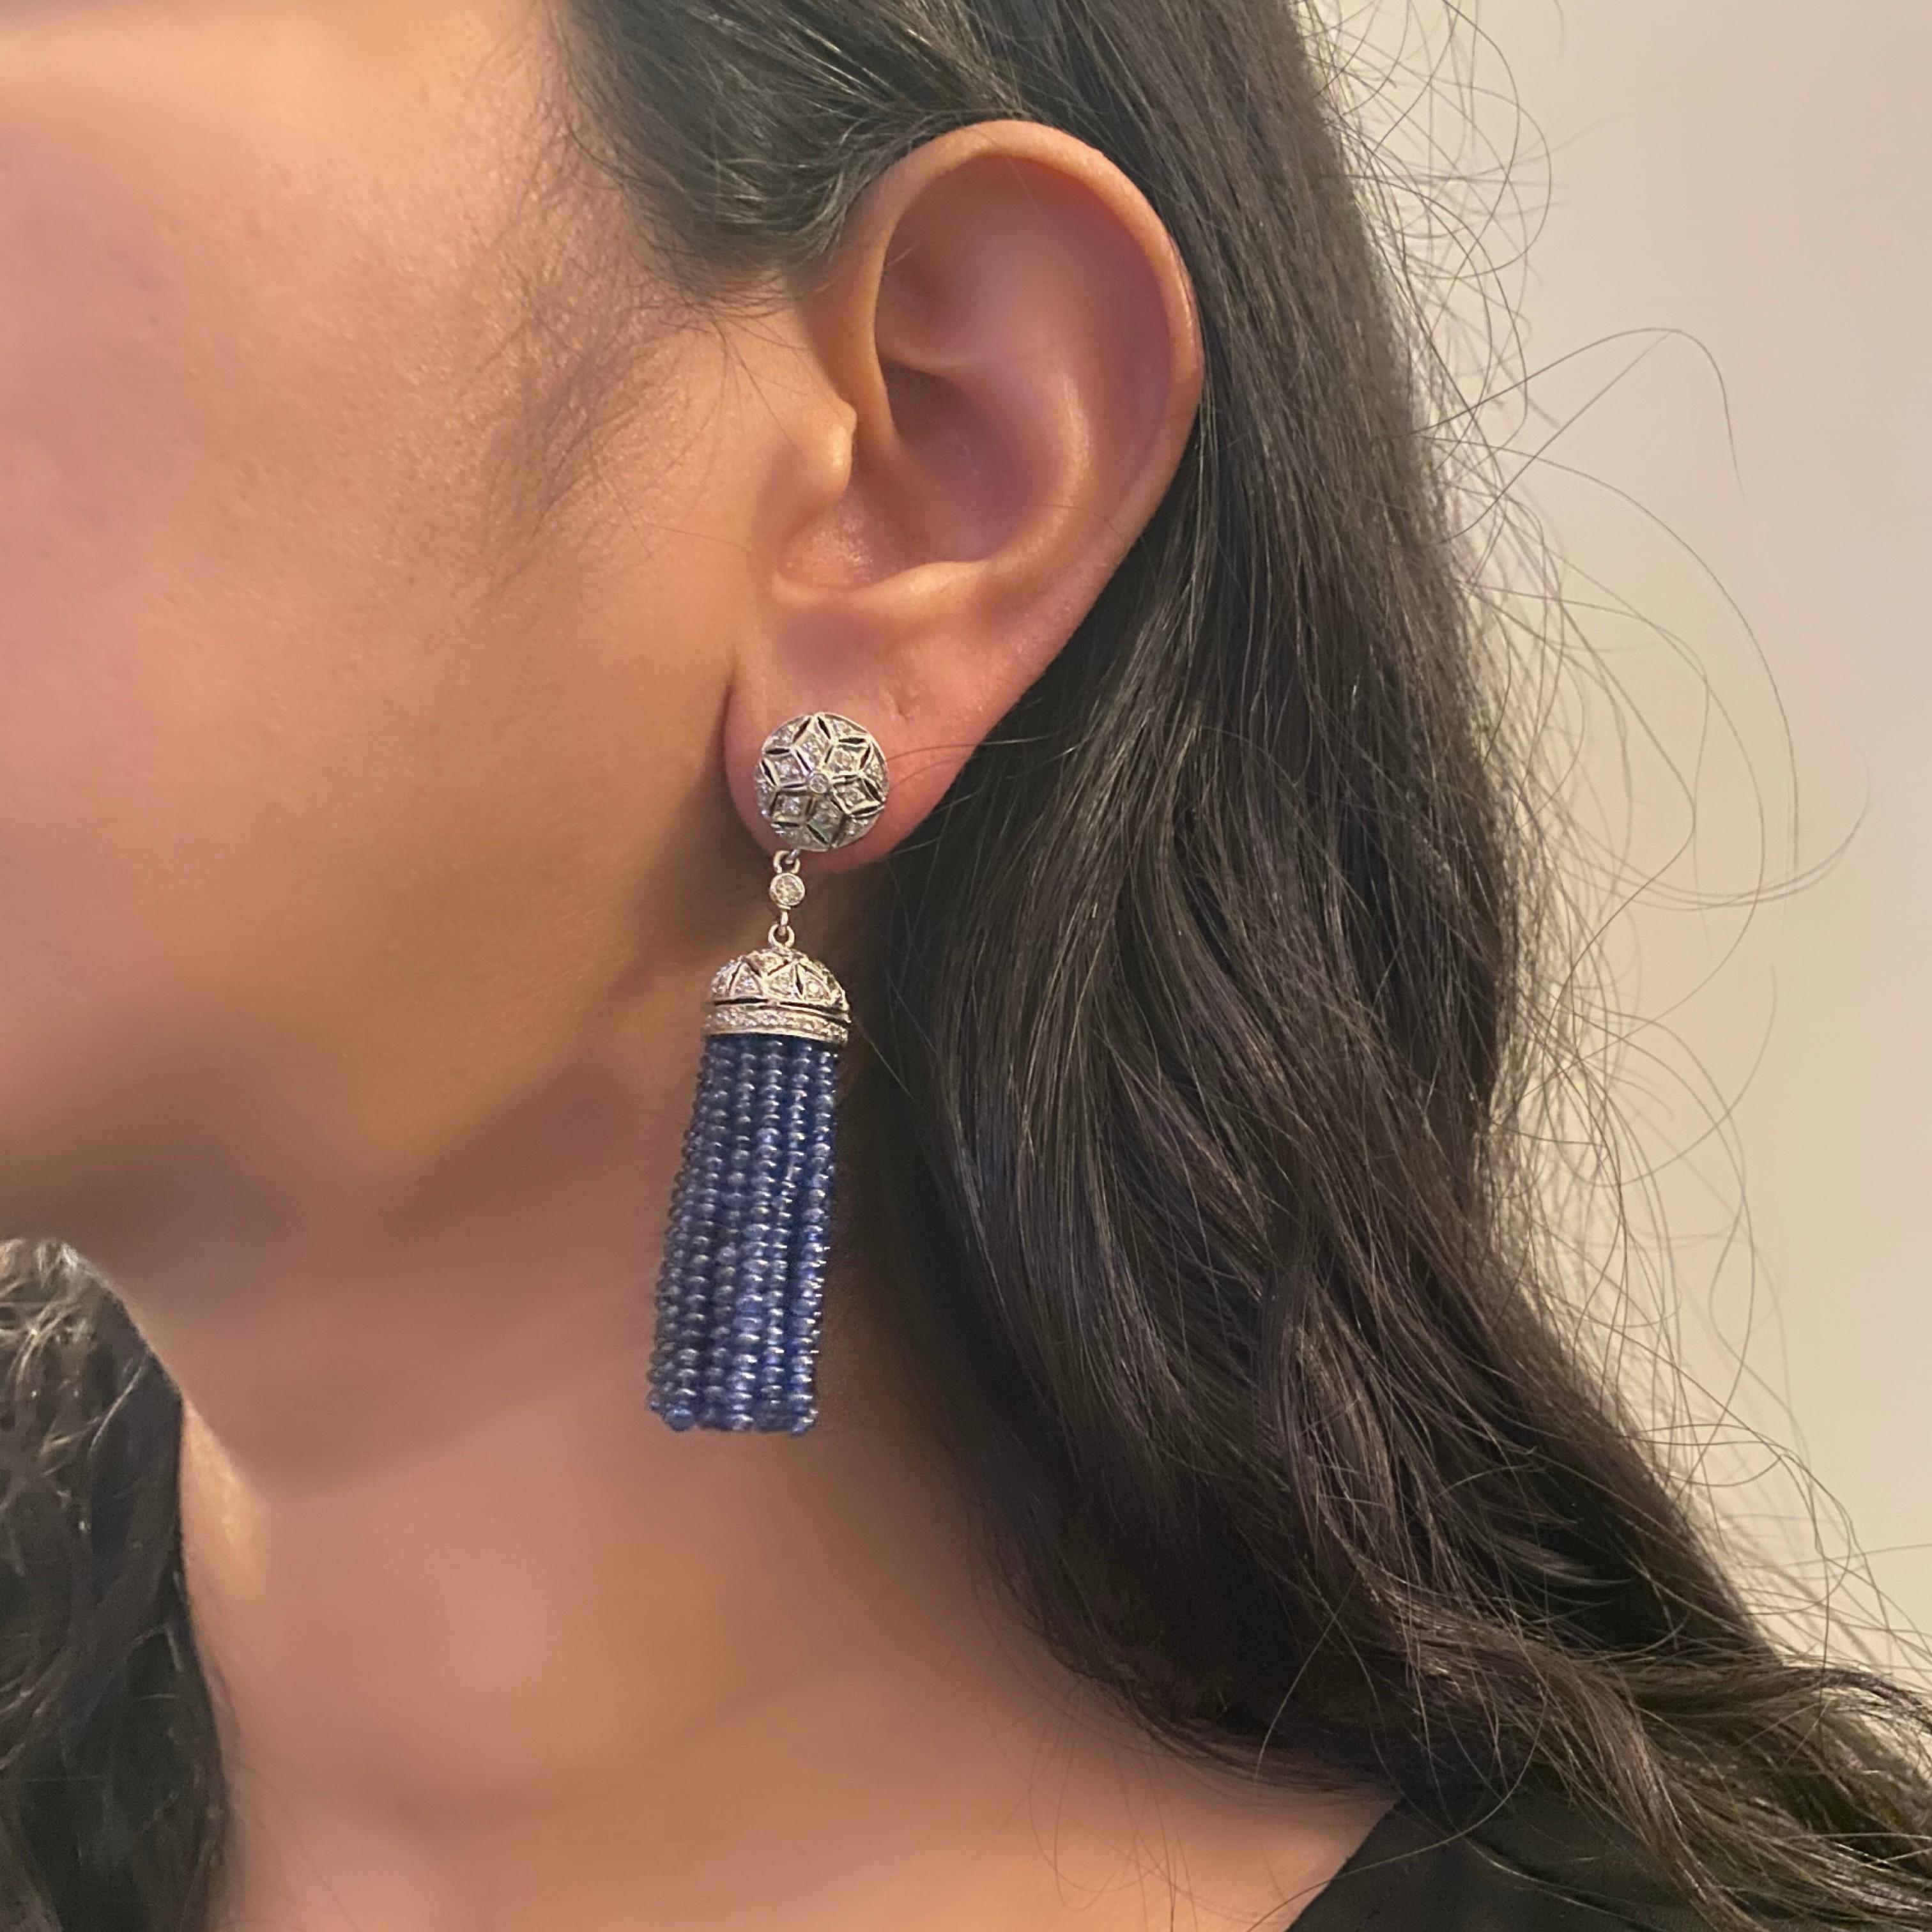 Wir präsentieren unseren exquisiten Ohrring mit Diamant und blauem Saphir aus 18 Karat Weißgold, ein Symbol für Eleganz und Raffinesse. Diese atemberaubenden Ohrringe sind ein wahres Aushängeschild für zeitlose Schönheit und die perfekte Mischung